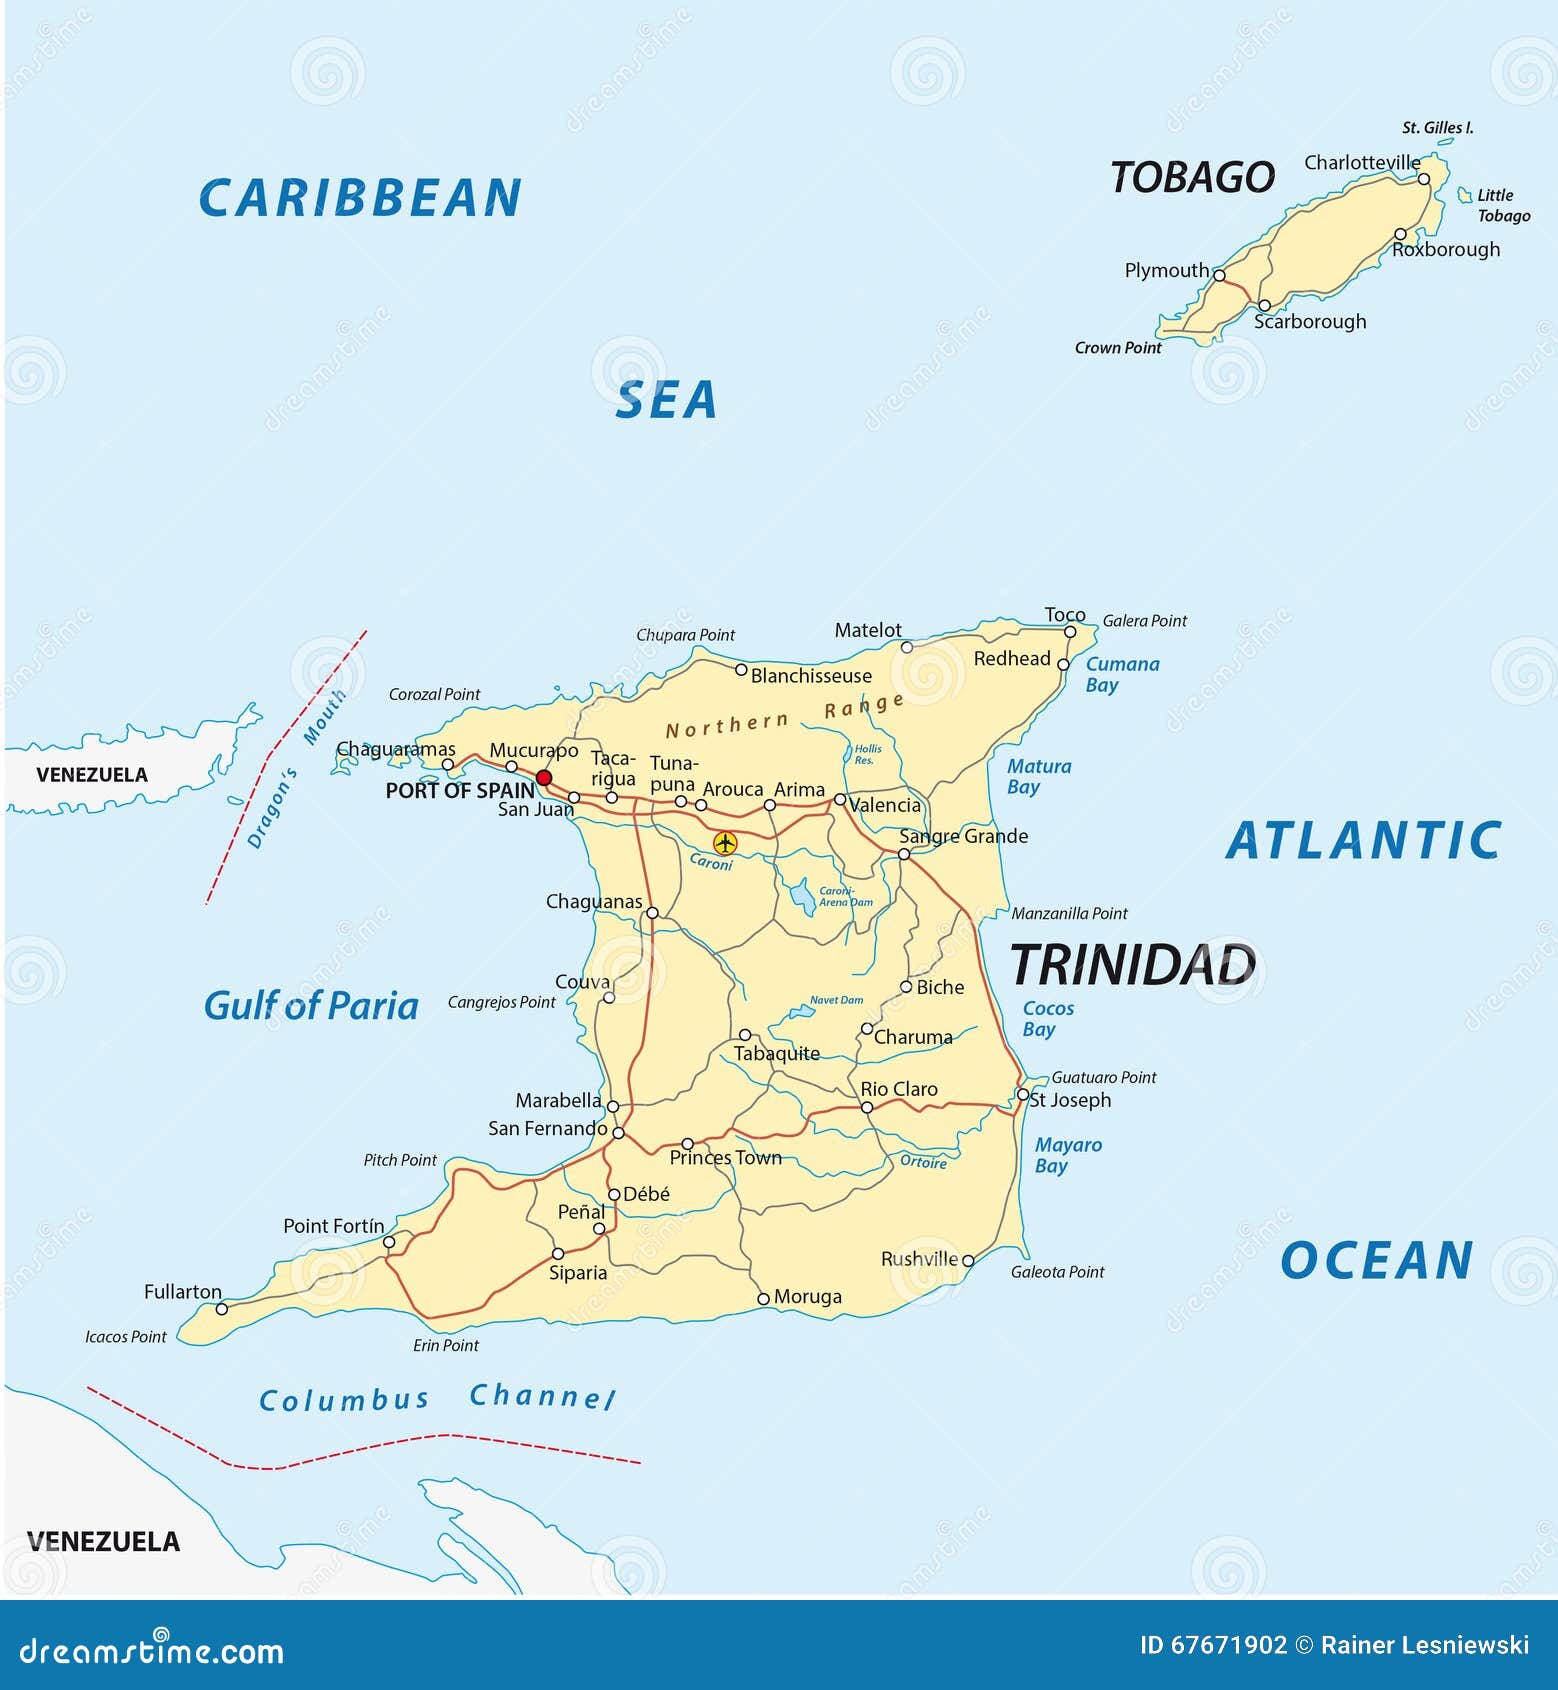 特立尼达和多巴哥军队历史与现状介绍 - 哔哩哔哩